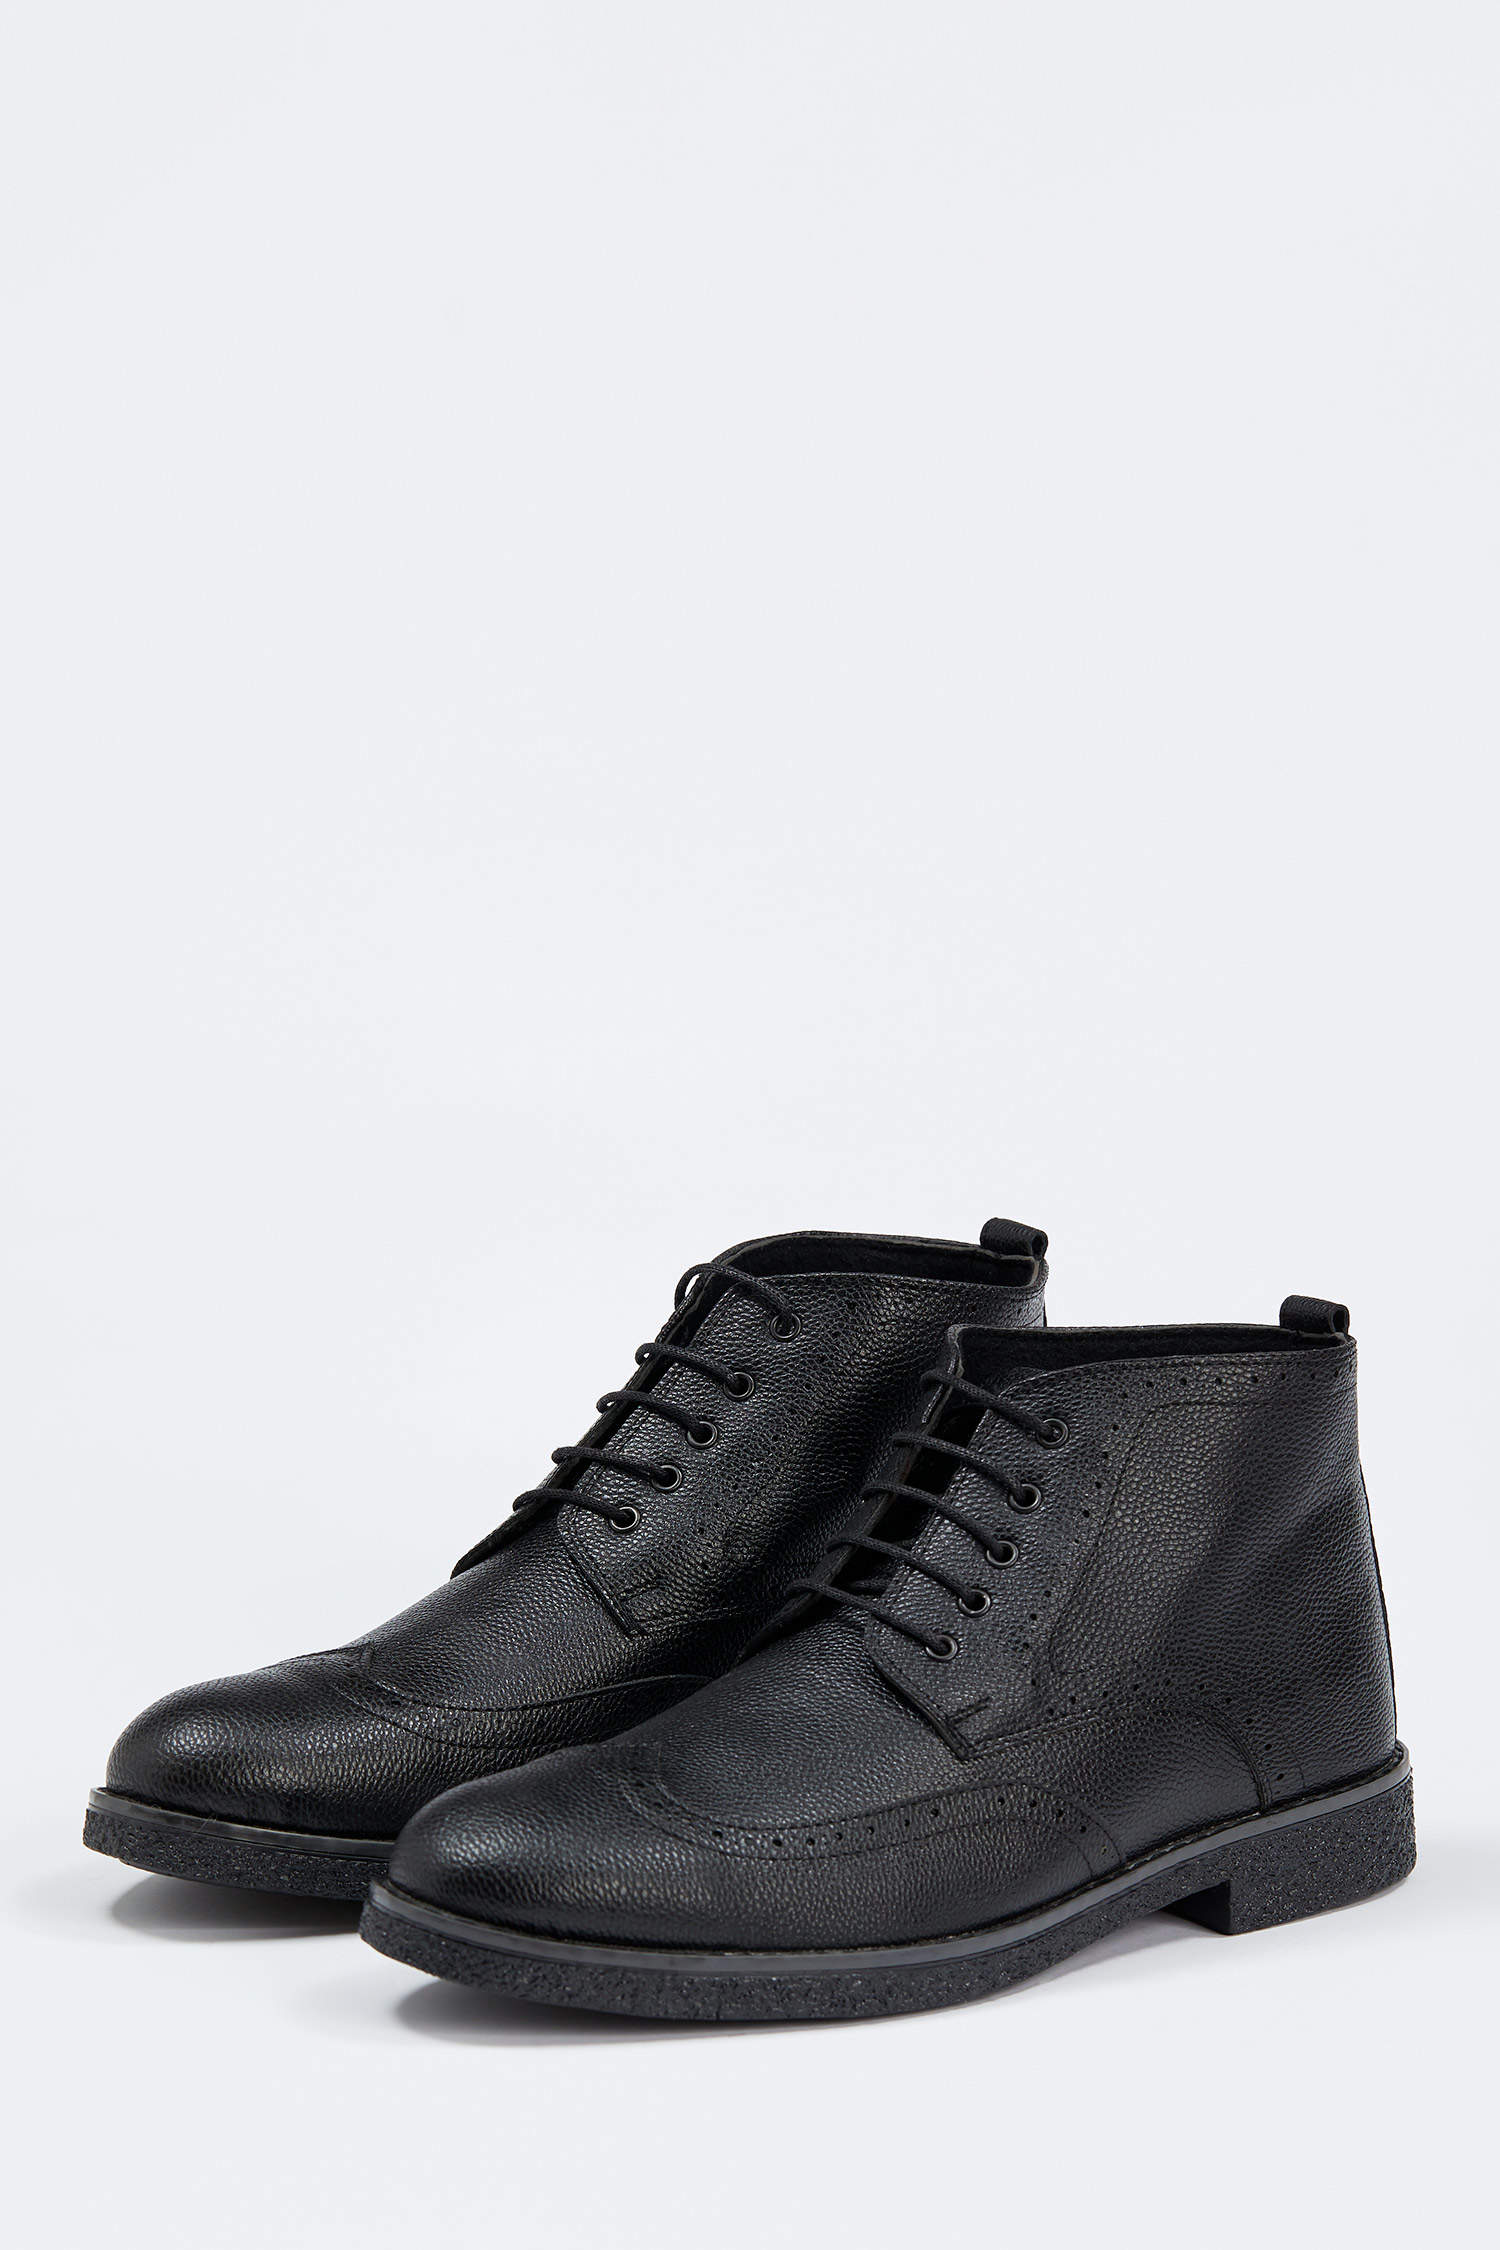 Black MAN Faux Leather Lace up Boots 1569853 | DeFacto